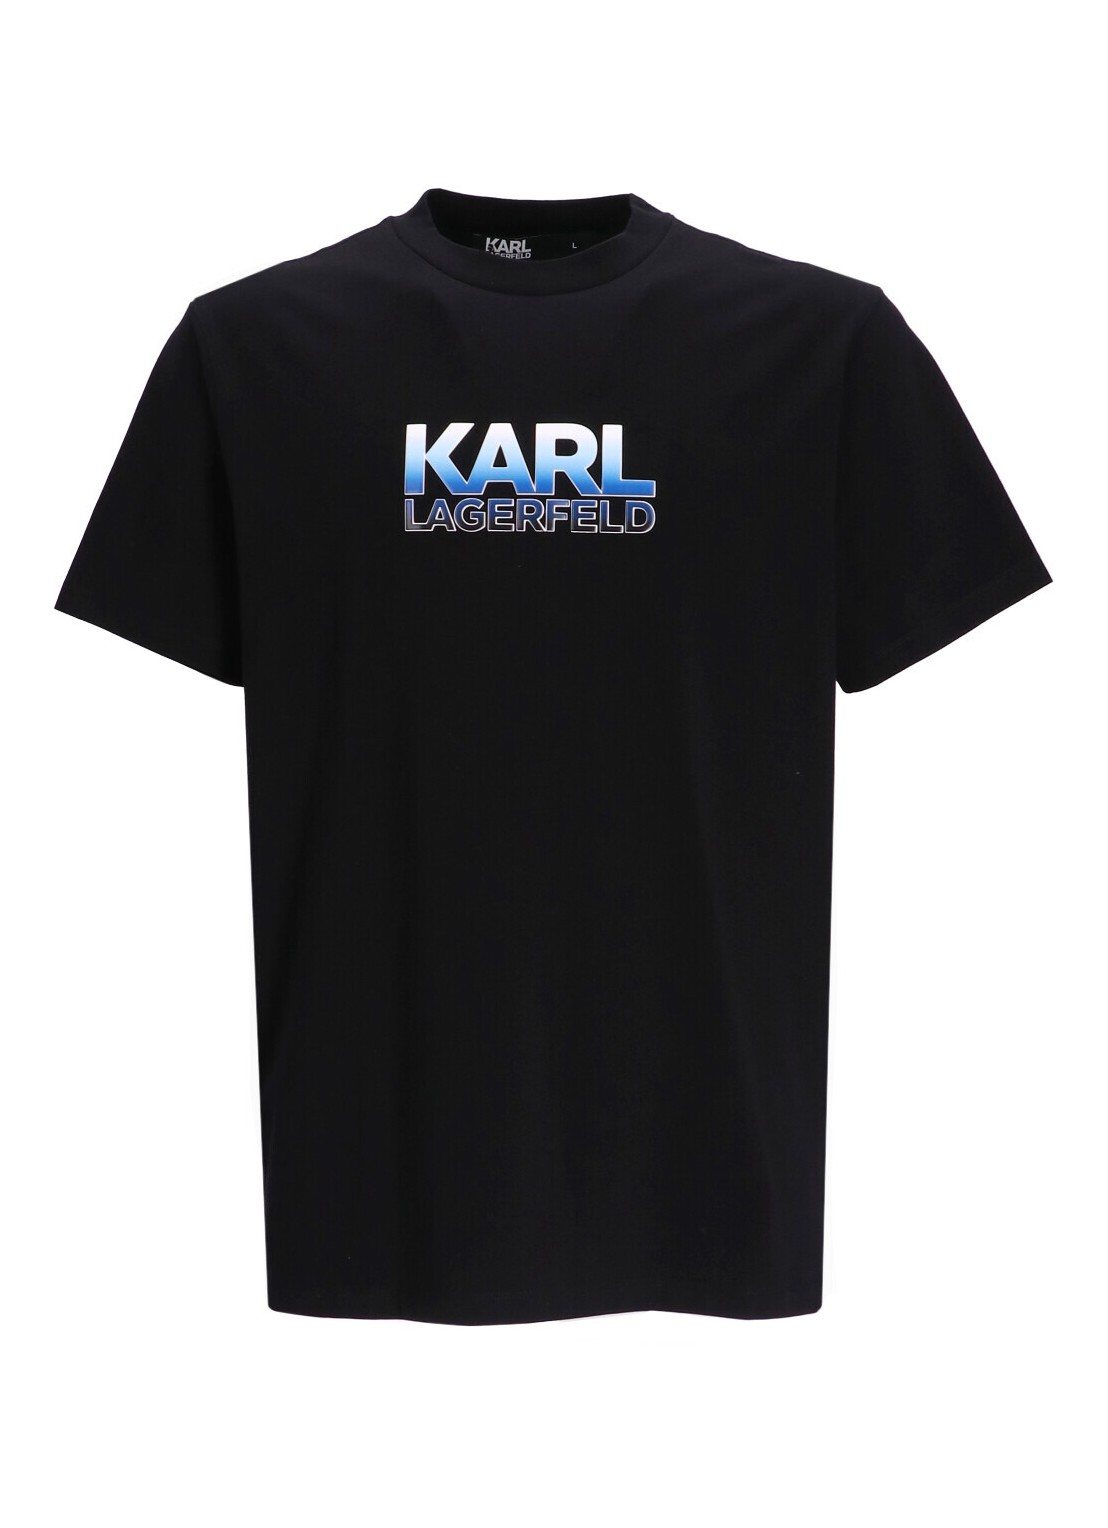 Camiseta karl lagerfeld t-shirt man t-shirt crewneck 755402541221 990 talla XXL
 